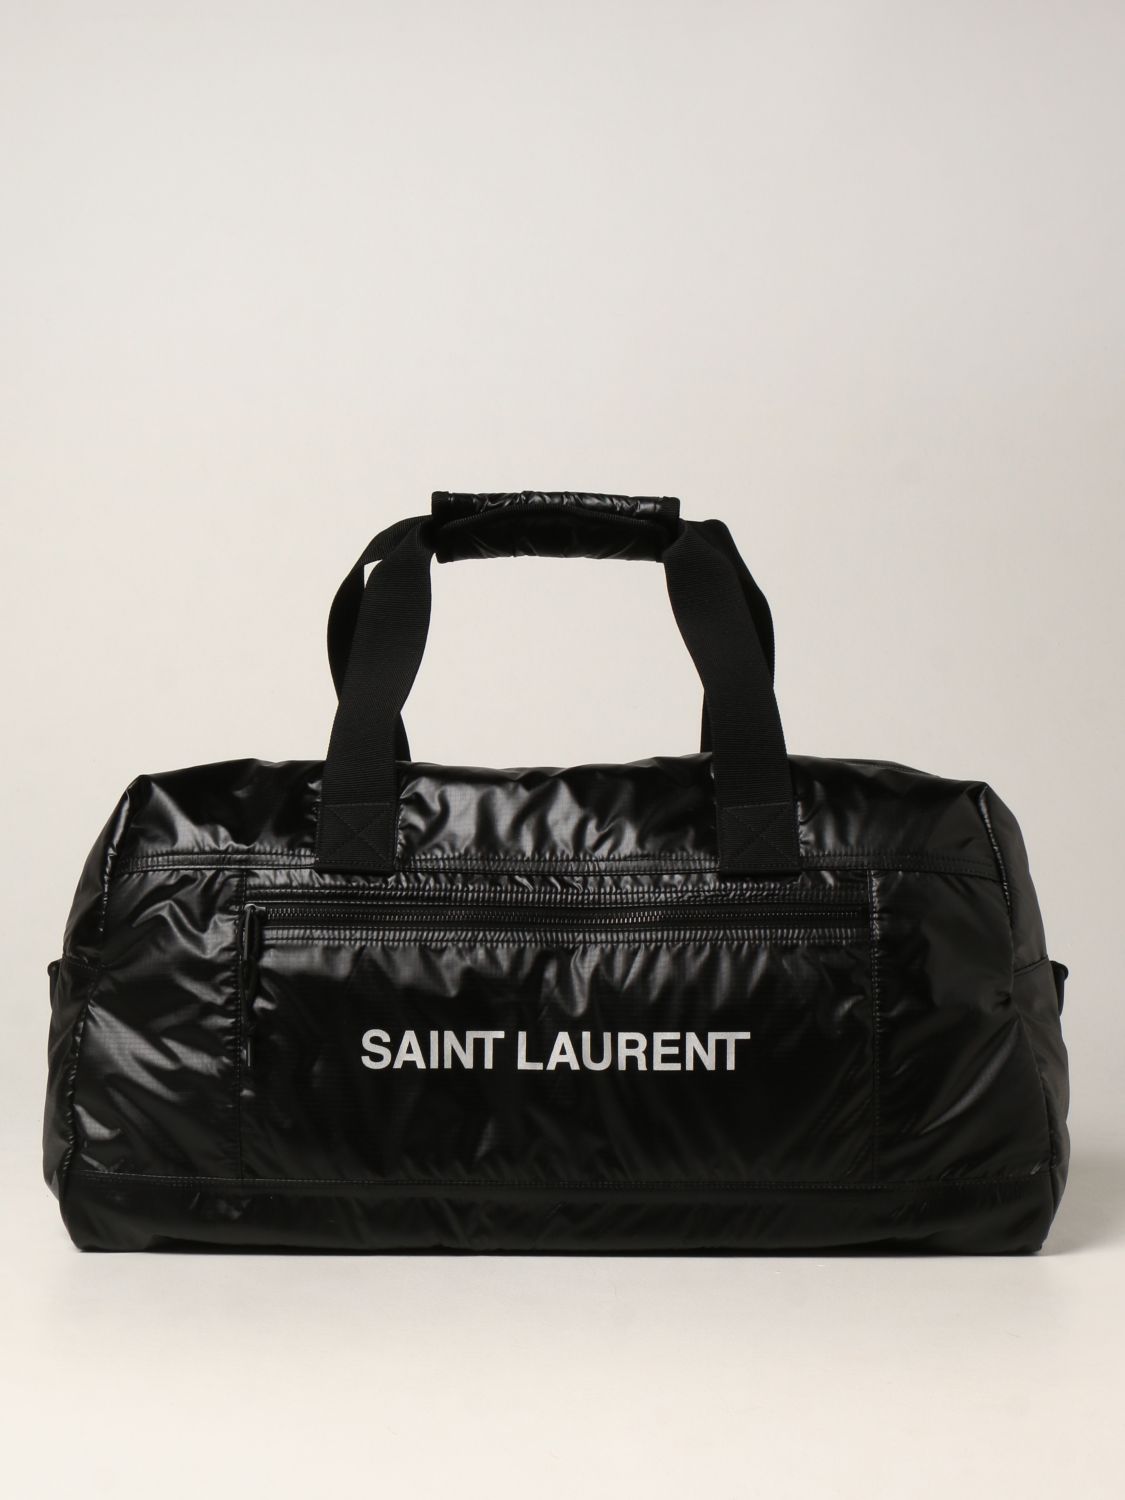 Travel bag Saint Laurent: Saint Laurent Nuxx Duffle nylon travel bag black 1